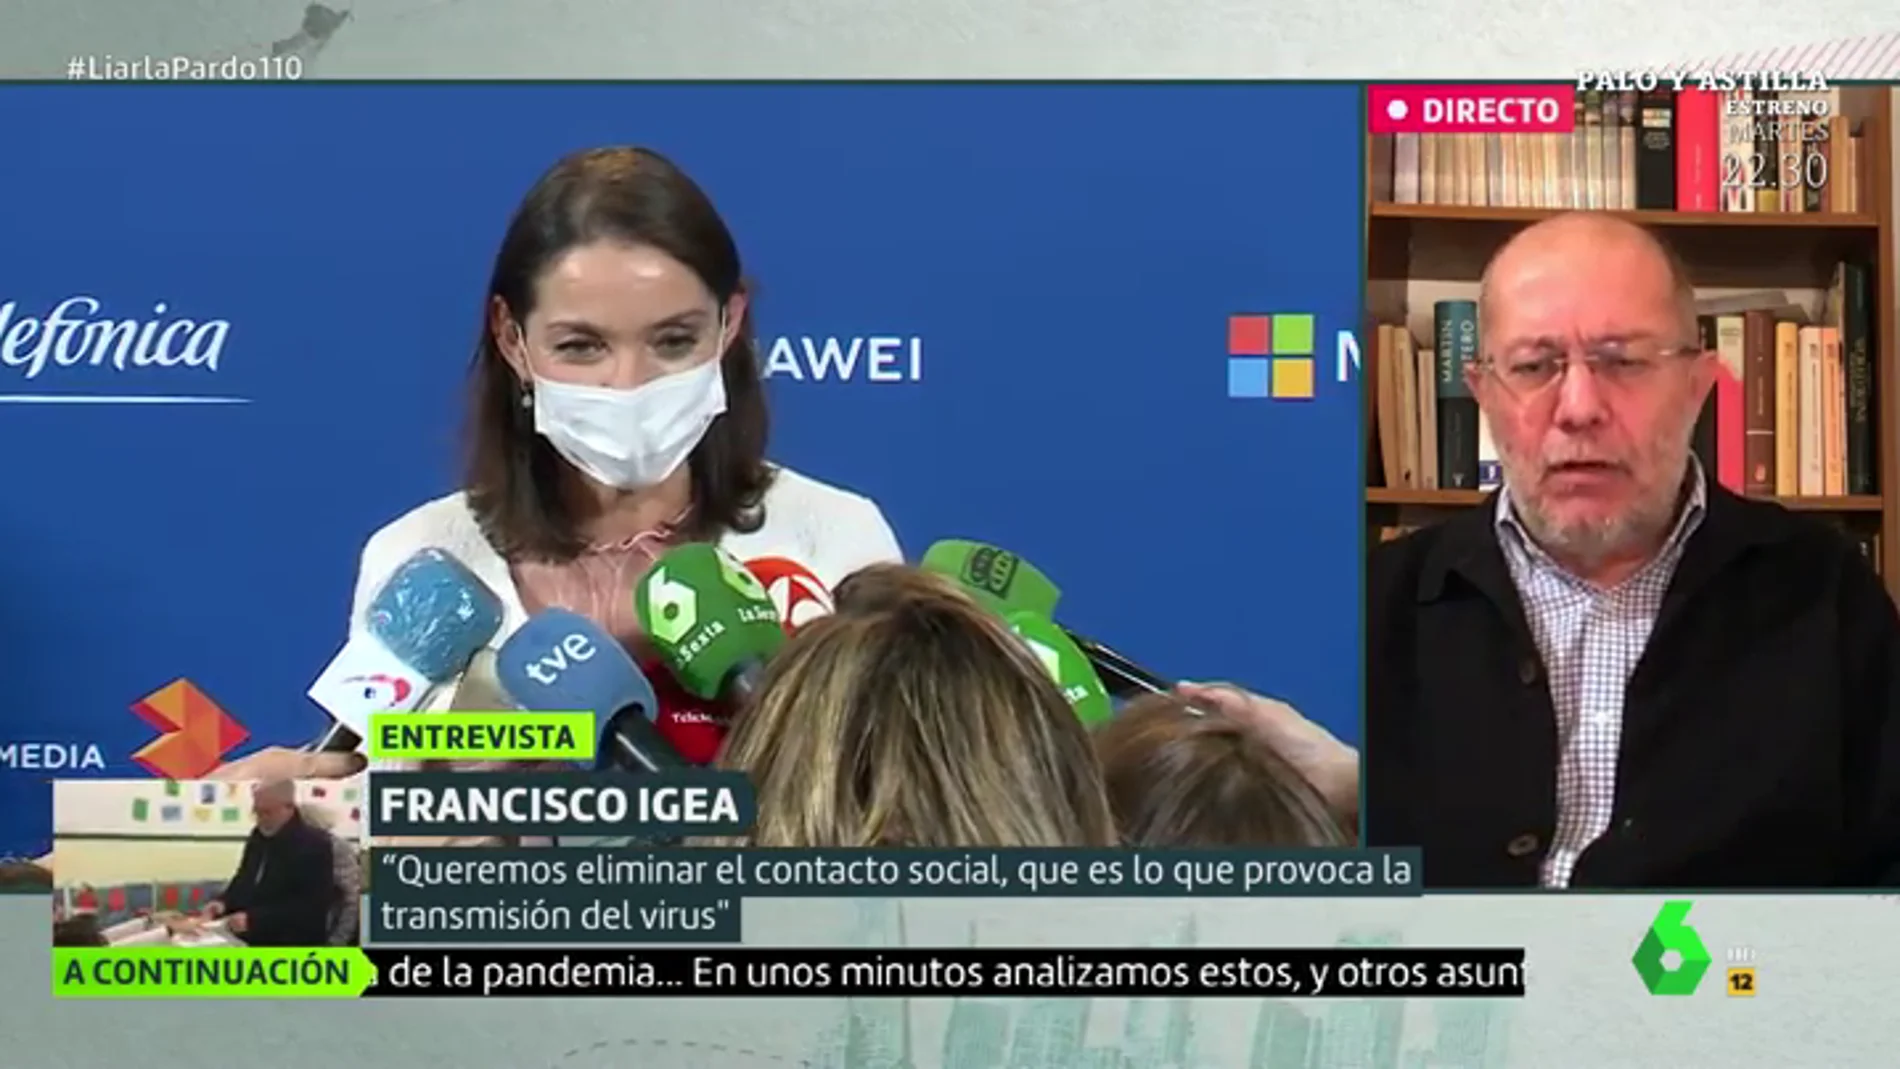 La dura crítica Francisco Igea a la ministra Reyes Maroto: "No hemos aprendido nada"